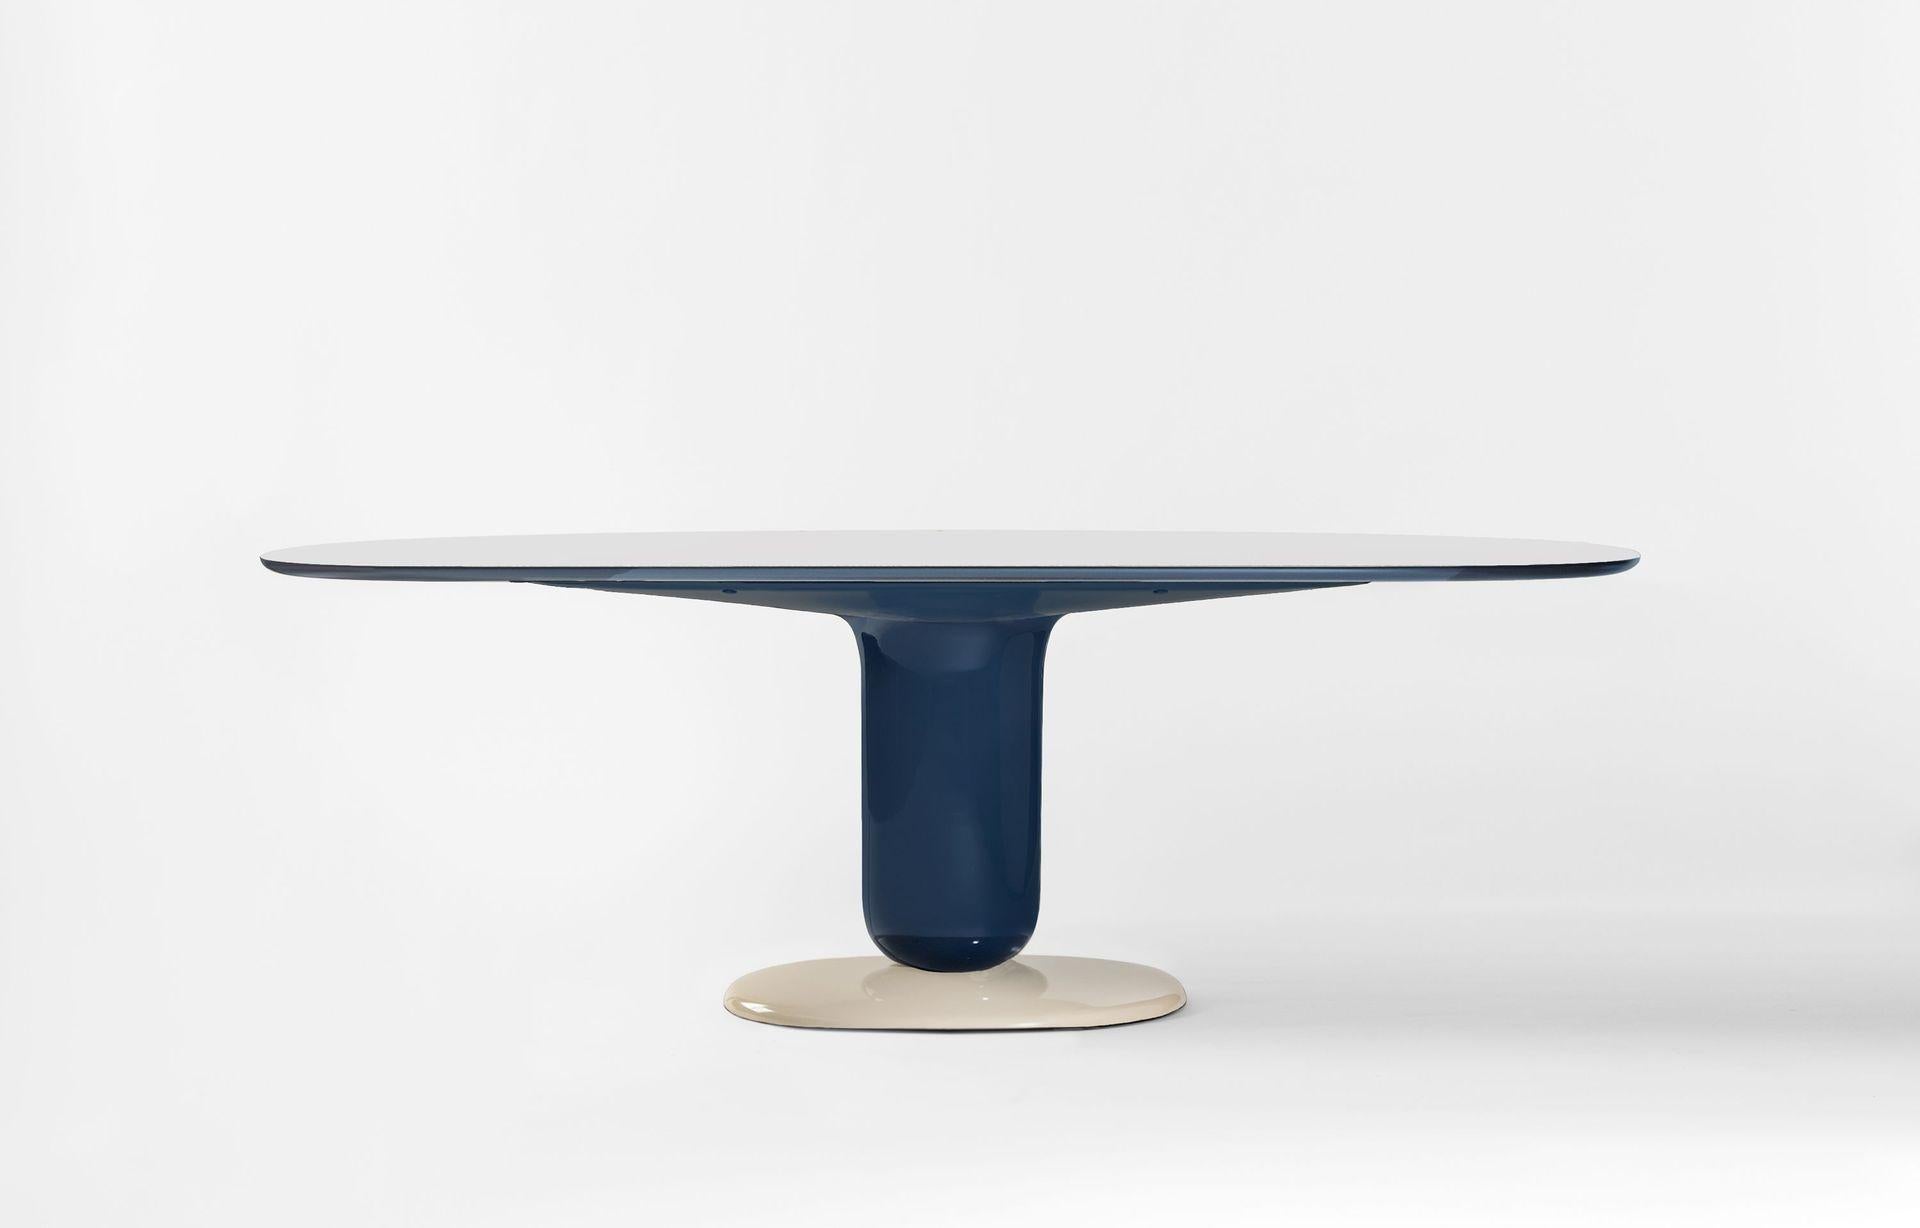 Der von Jaime Hayon im Jahr 2021 entworfene Tisch ergänzt die Explorer-Kollektion, die 2019 eingeführt wurde.
Hergestellt von BD Barcelona in Spanien.

Als Fortsetzung der verspielten Explorer Tischserie und in Anlehnung an ihre elegante Schönheit